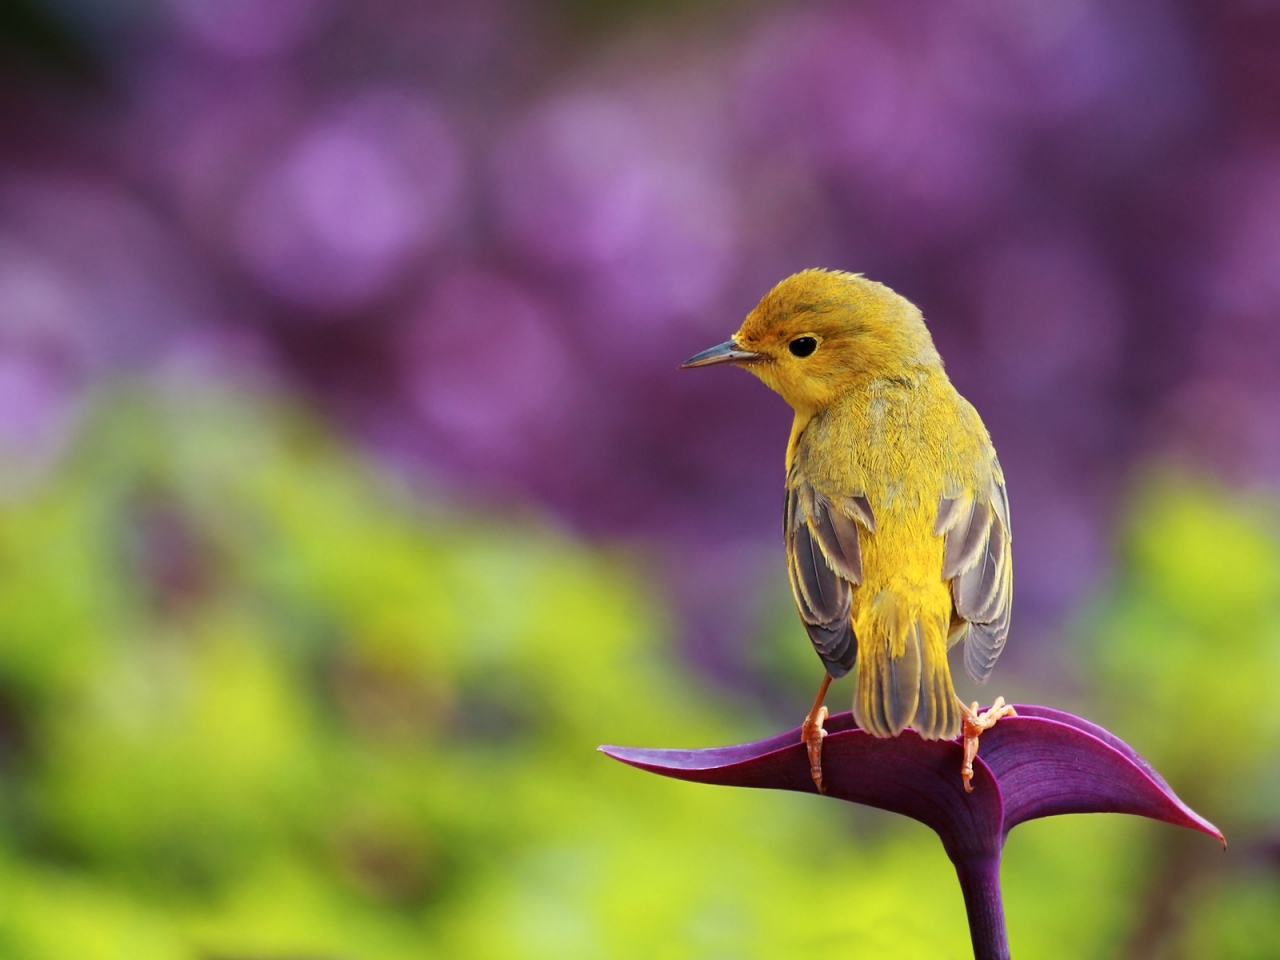 Little Bird for 1280 x 960 resolution